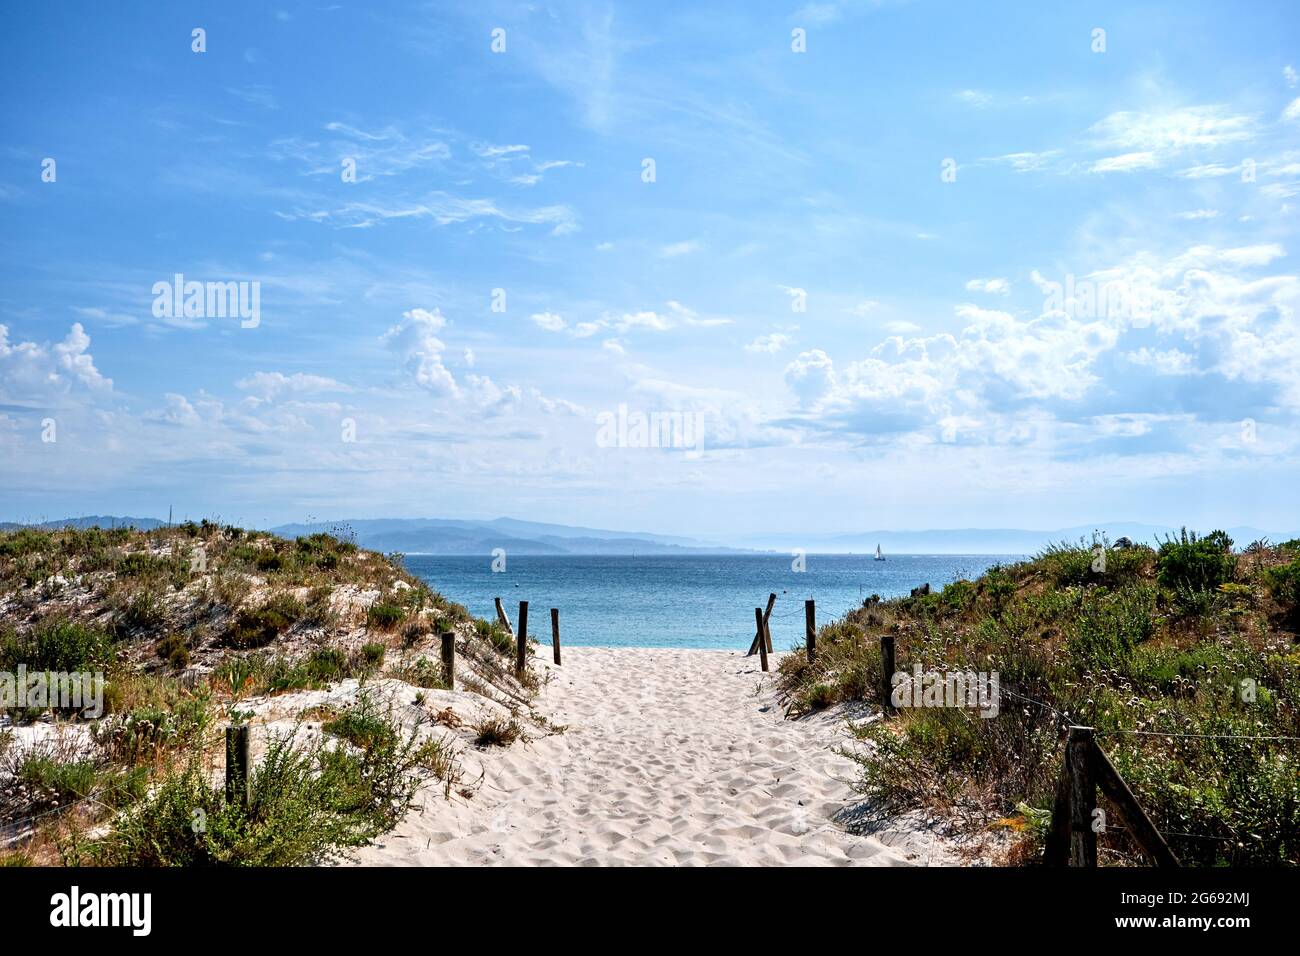 Sanddünen im Naturschutzgebiet der Cies Islands, weißer Sand und klares türkisfarbenes Wasser. Nationalpark der Atlantischen Inseln von Galizien, Spanien. Stockfoto